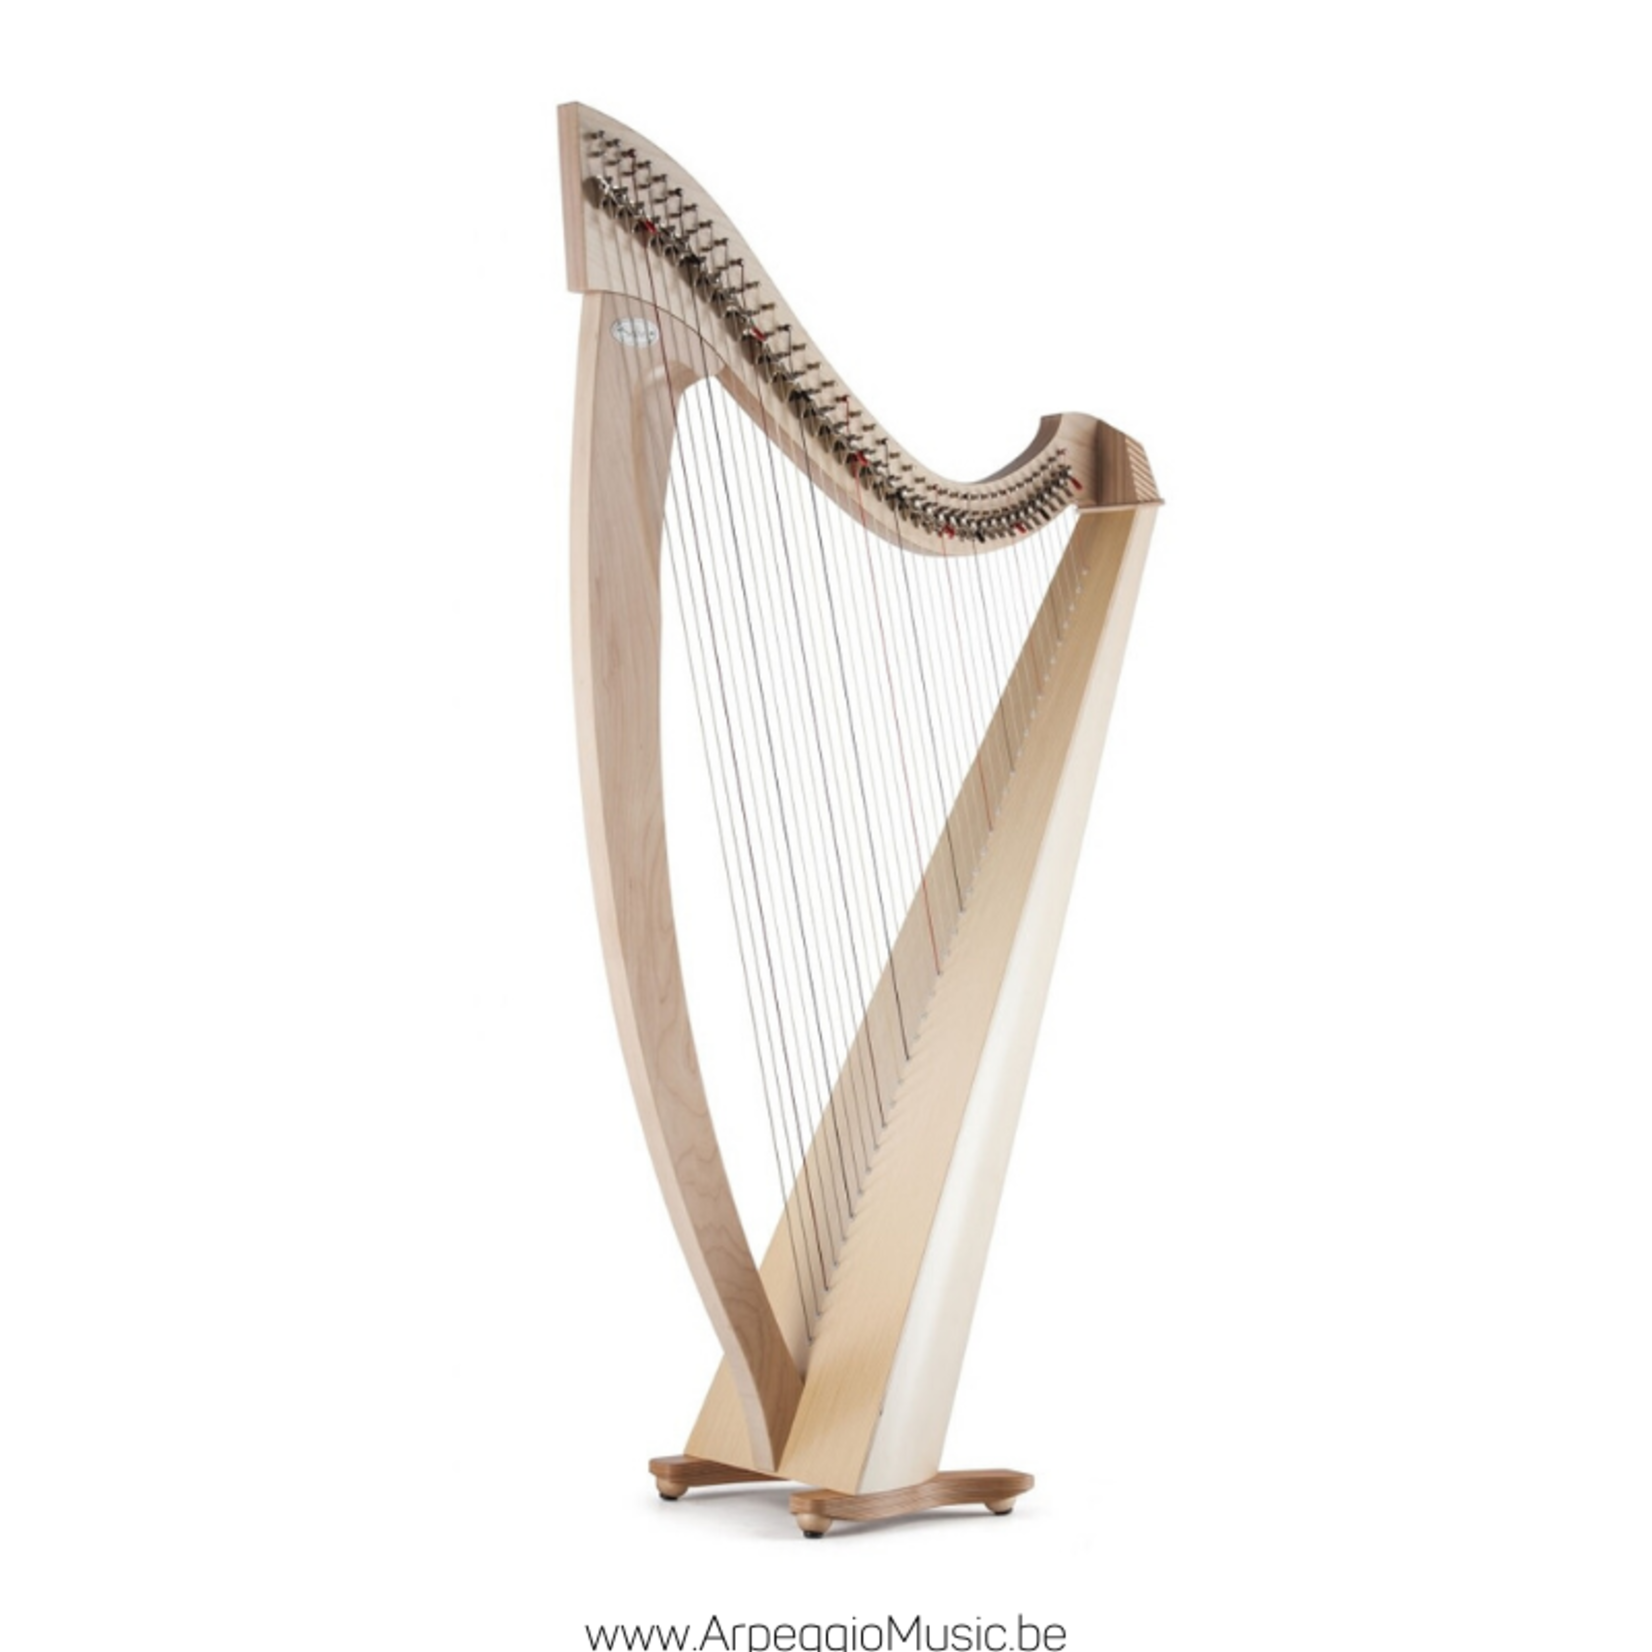 Salvi SALVI Titan harpe celtique Silkgut